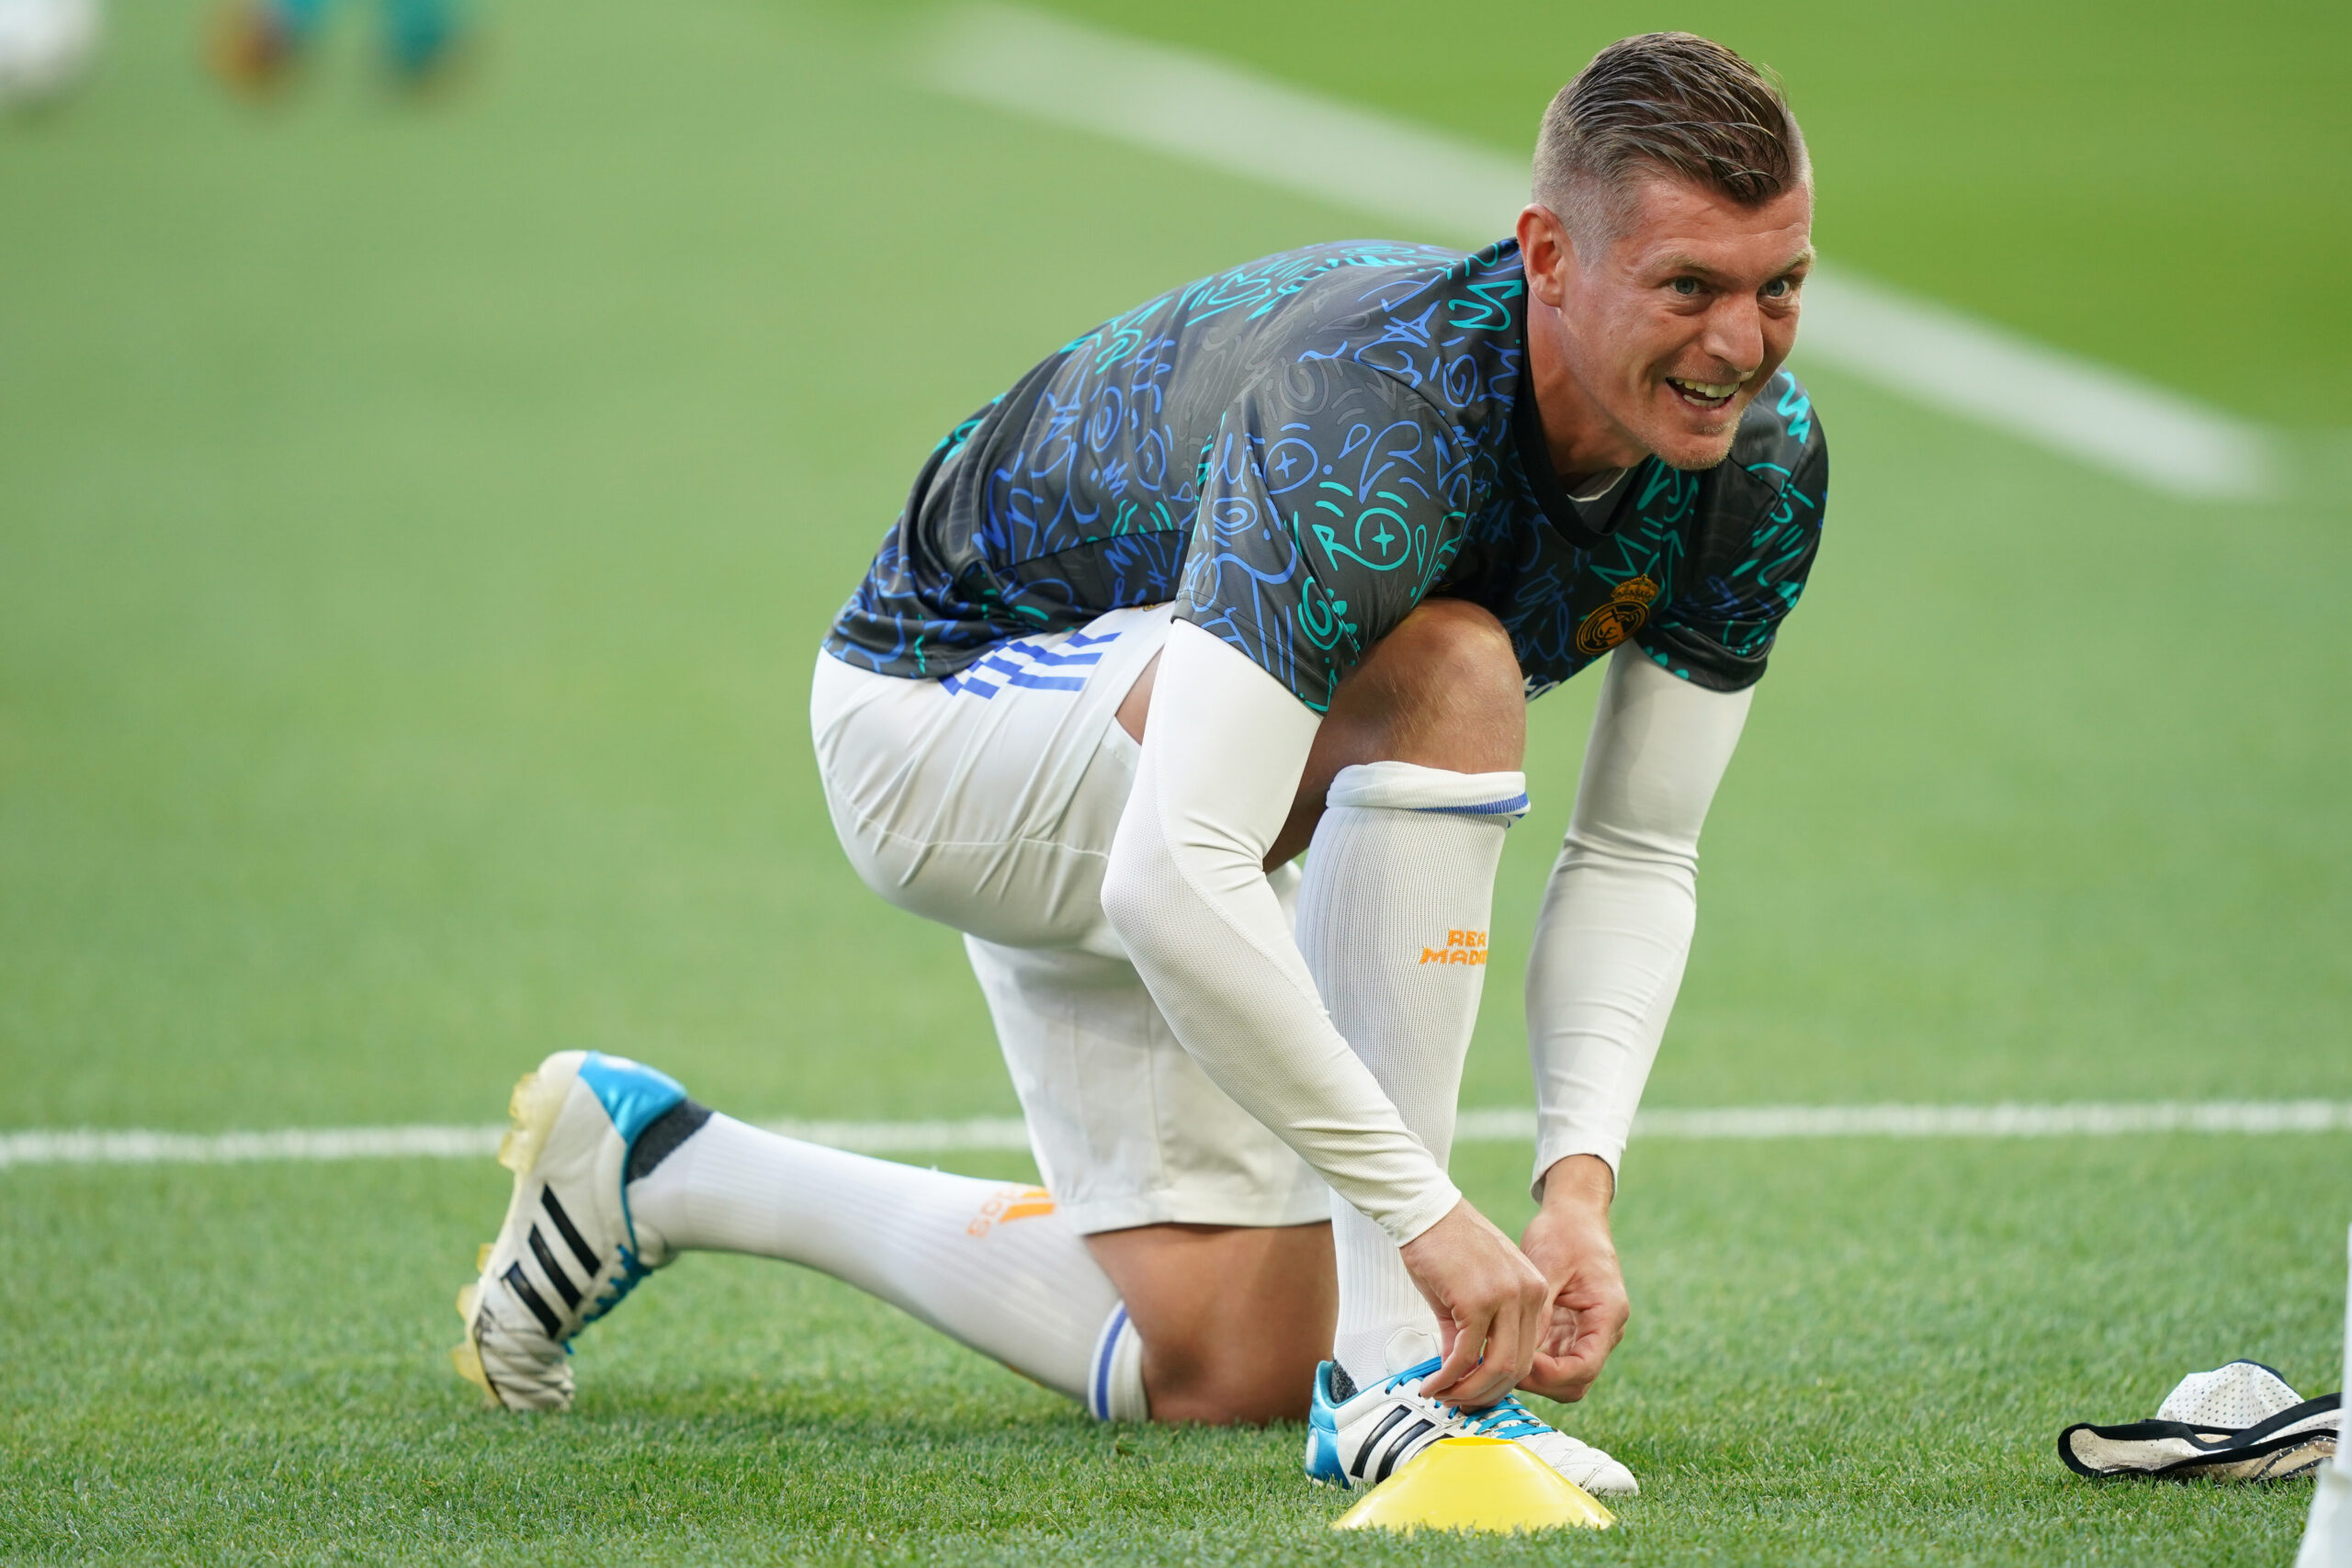 El centrocampista Toni Kroos subastará botas con las que jugó la final de Champions | DeportesOn